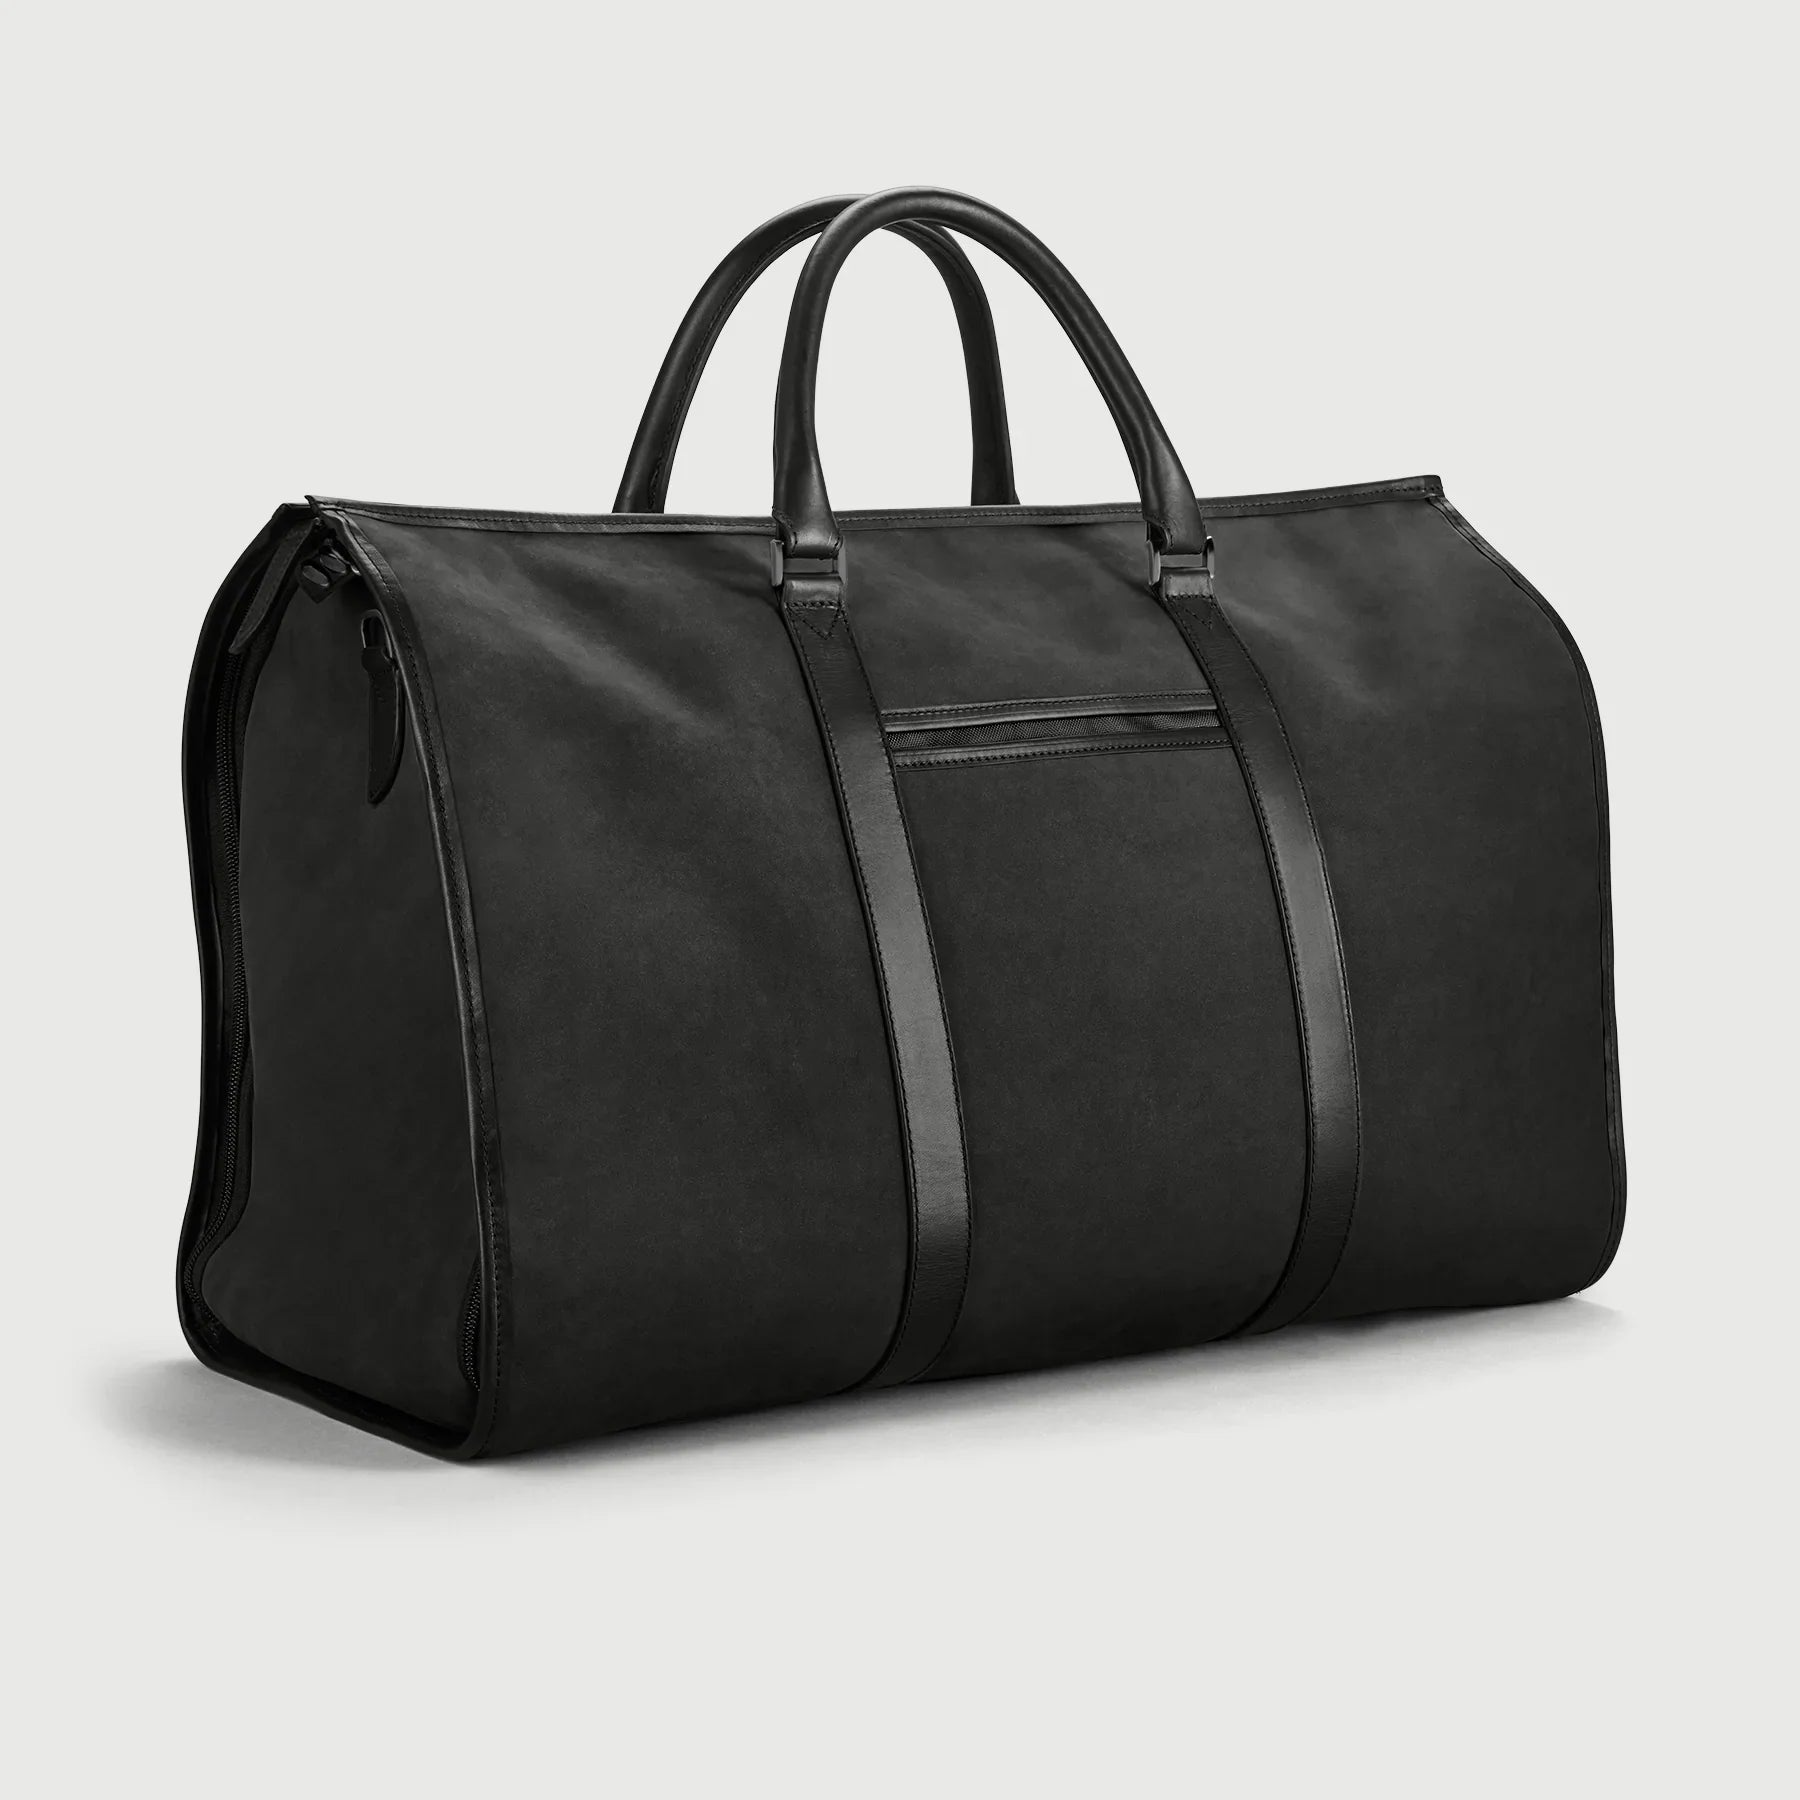 Getaway Weekender - Return Black Leather garment bag - Fair Condition